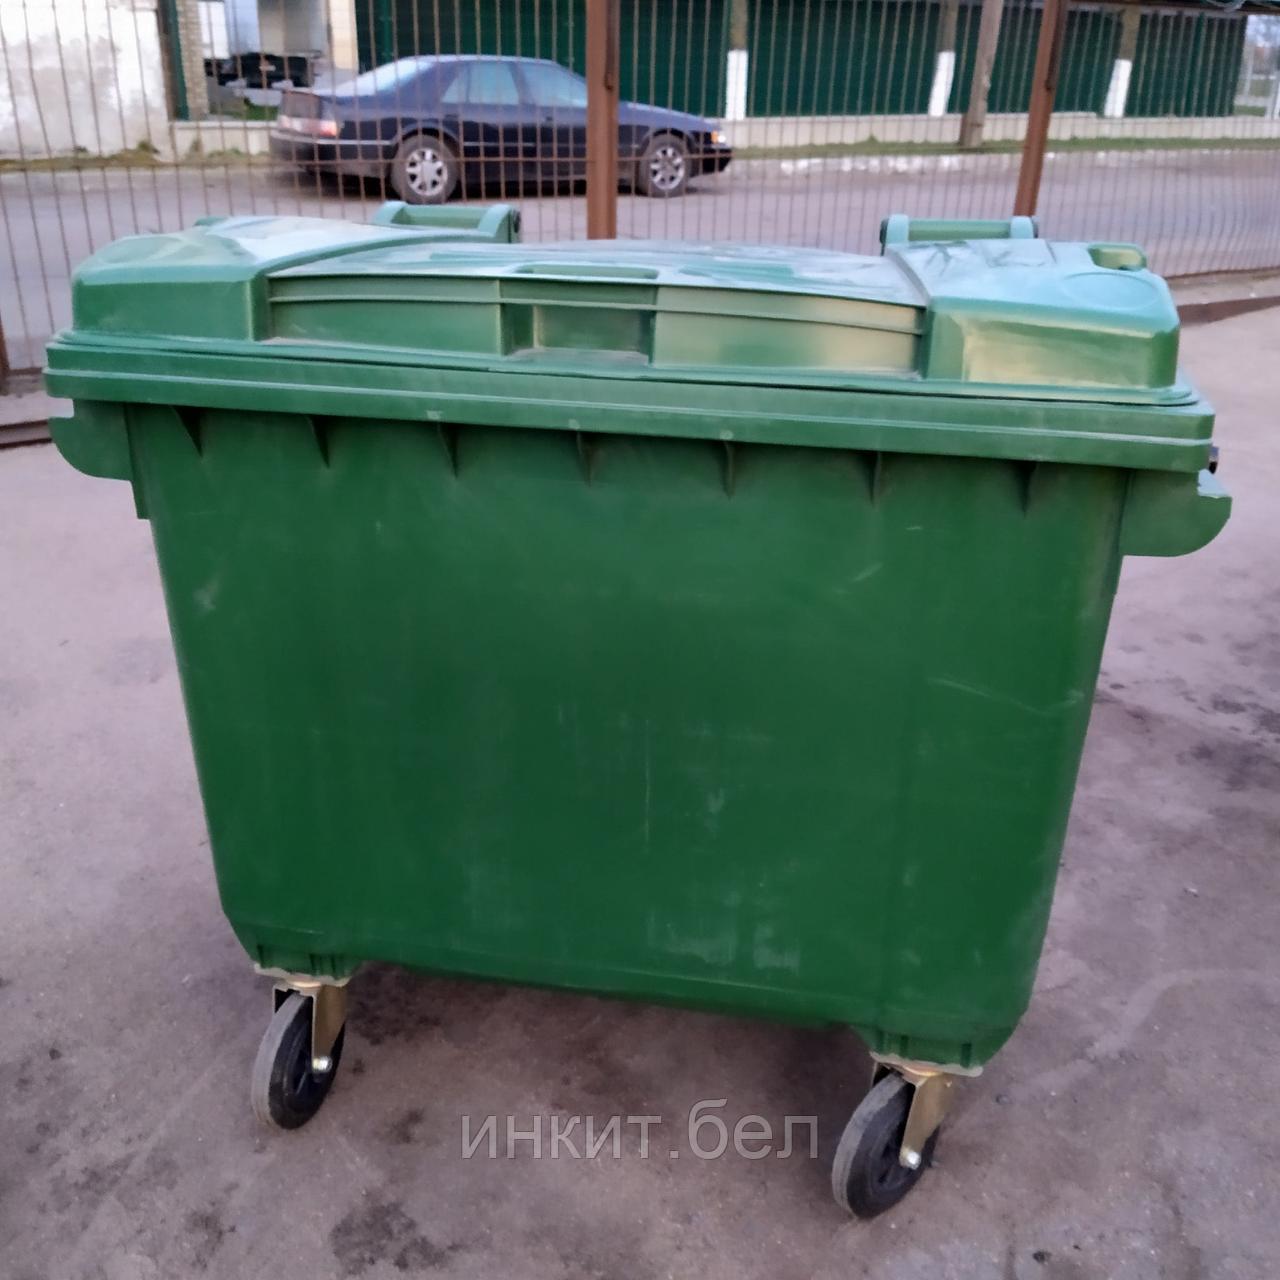 Контейнер для мусора пластиковый 660 л зеленый, Россия, фото 1